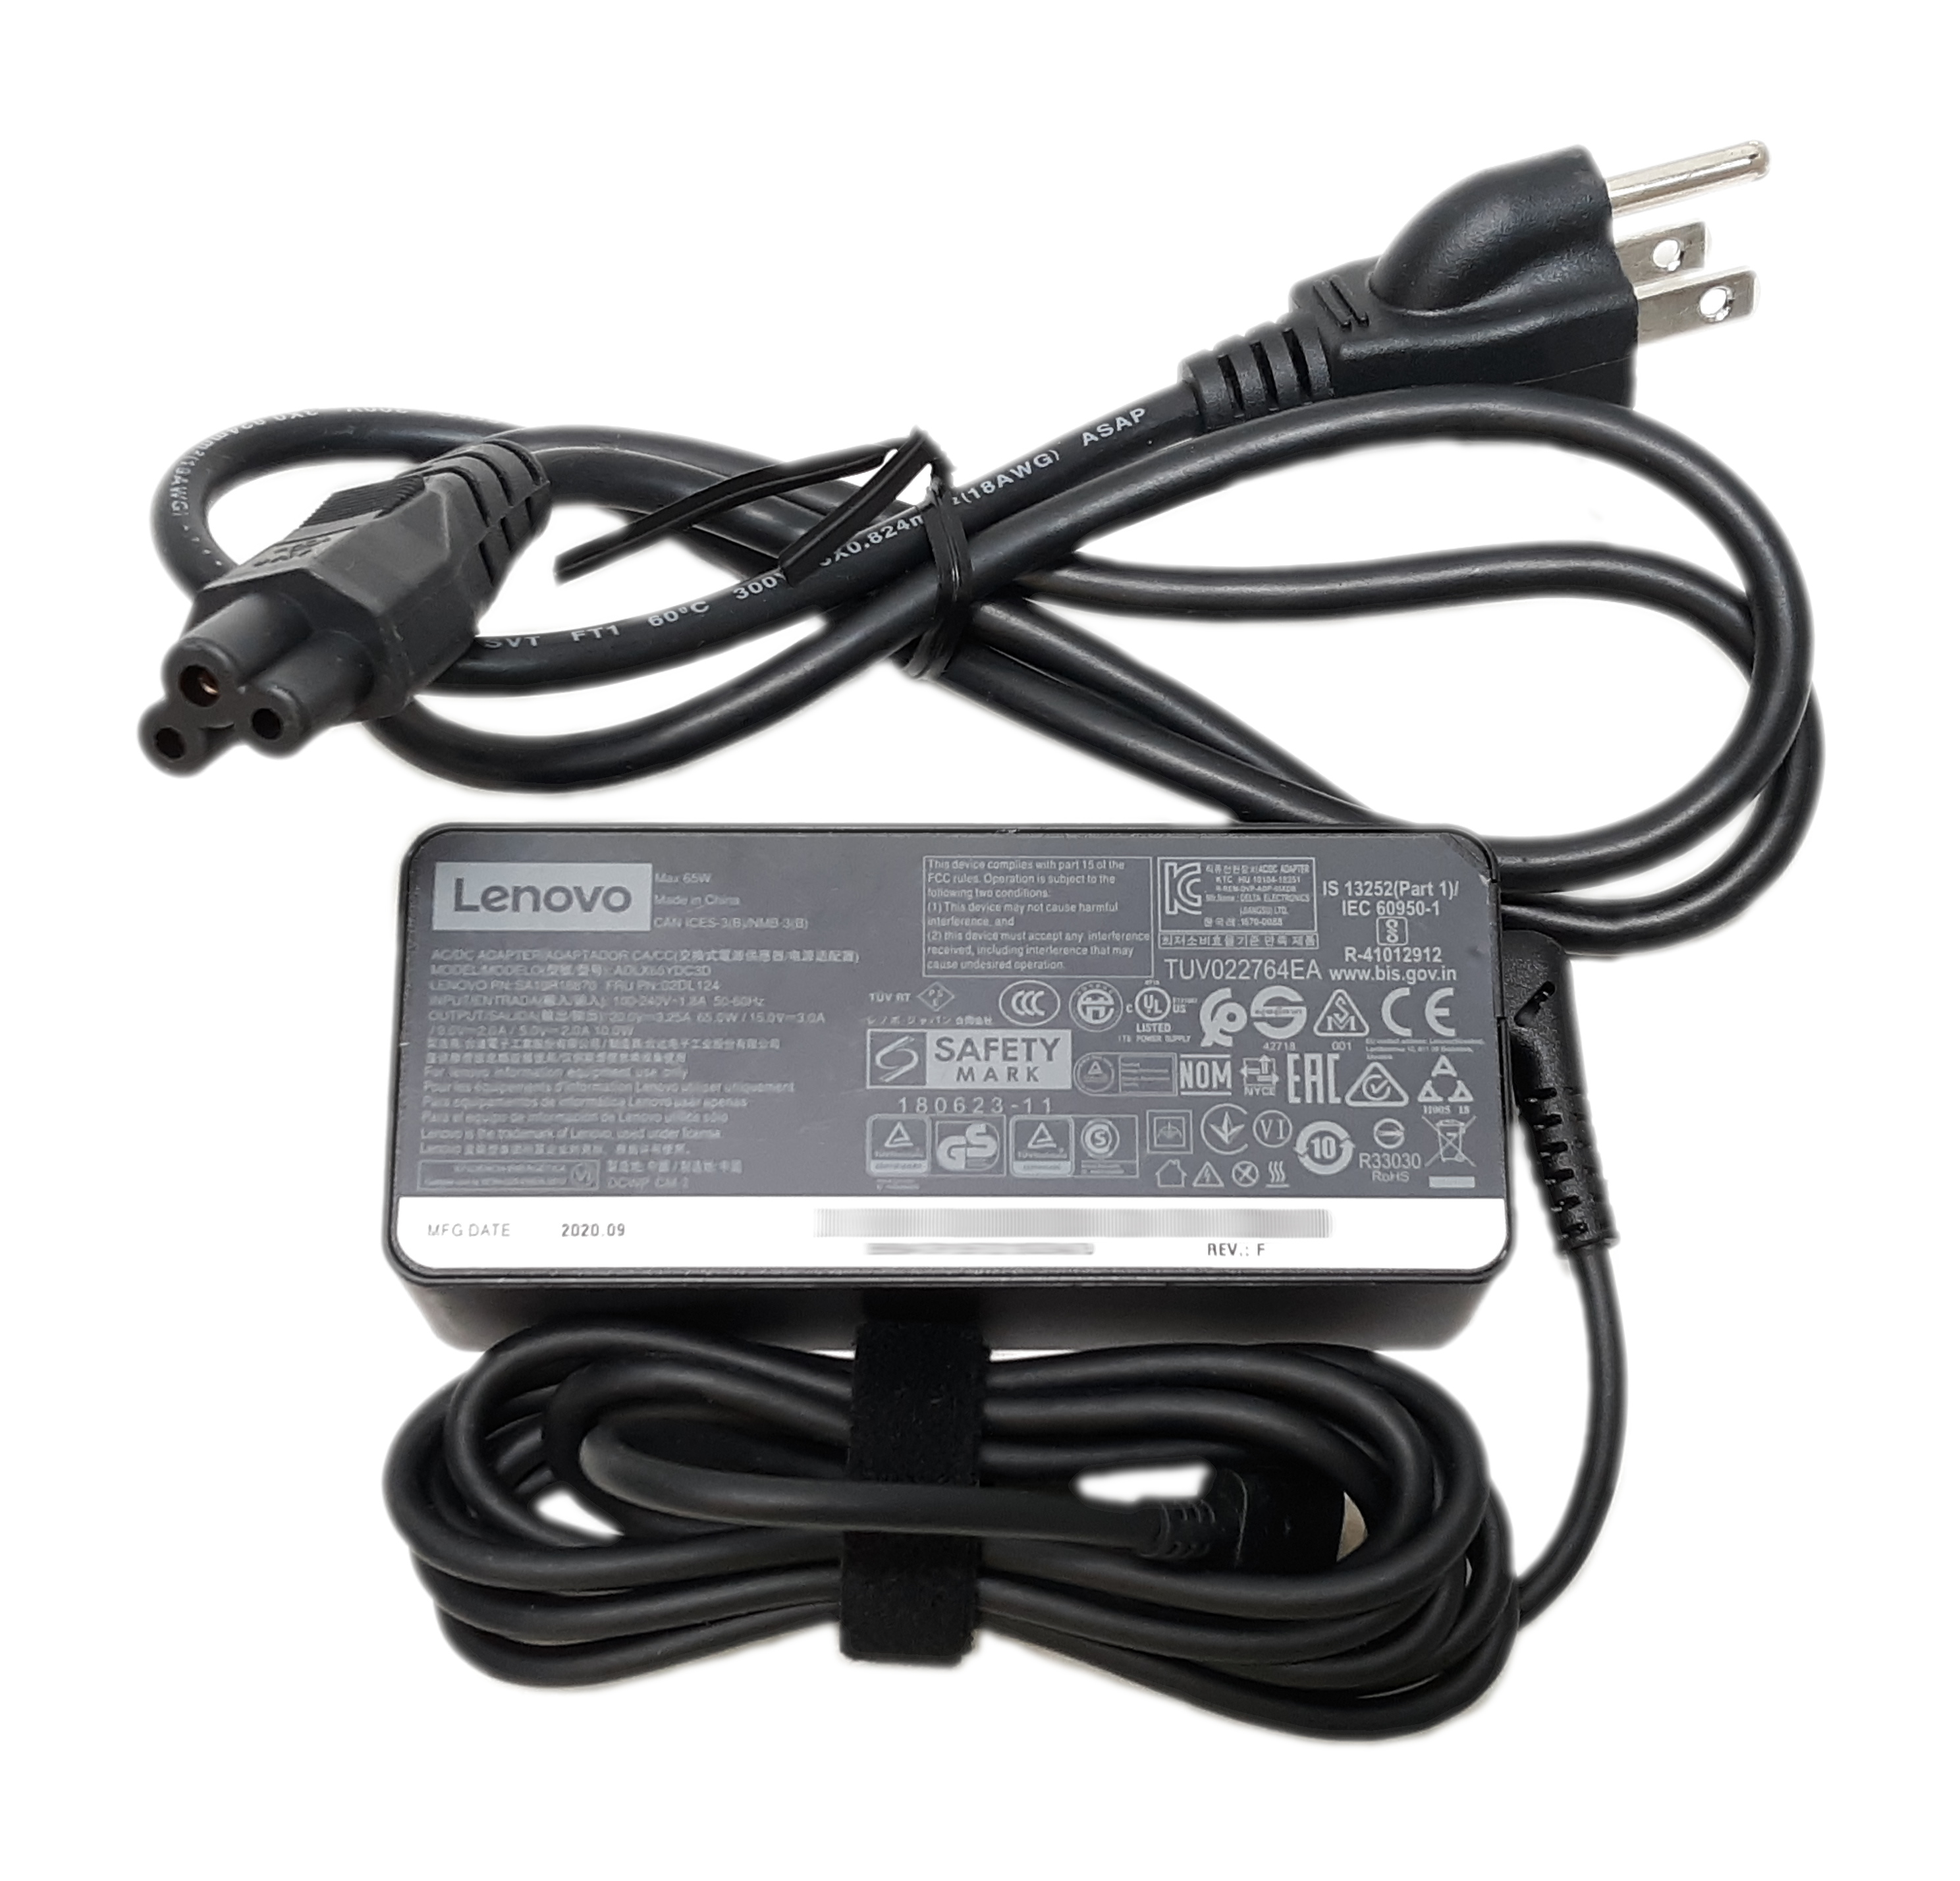 Lenovo AC Power Adapter ADLX65YLC3D 65W USB-C Input: 100-240V 1.8A Output: 5/9V 2A, 15V 3A, 20V-3.25A 02DL128 - Click Image to Close